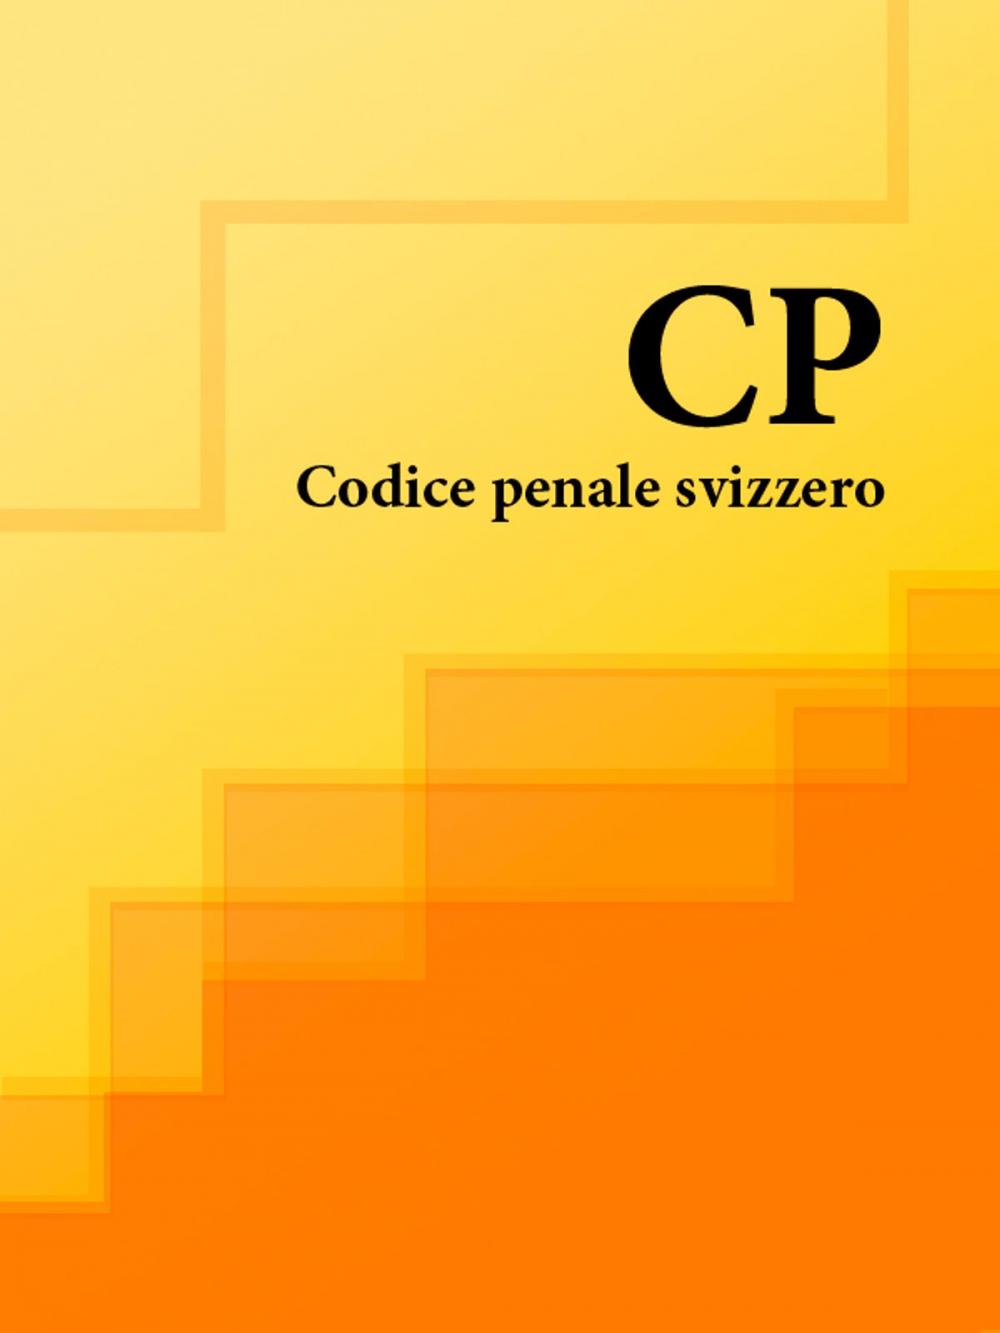 Big bigCover of Codice penale svizzero - CP